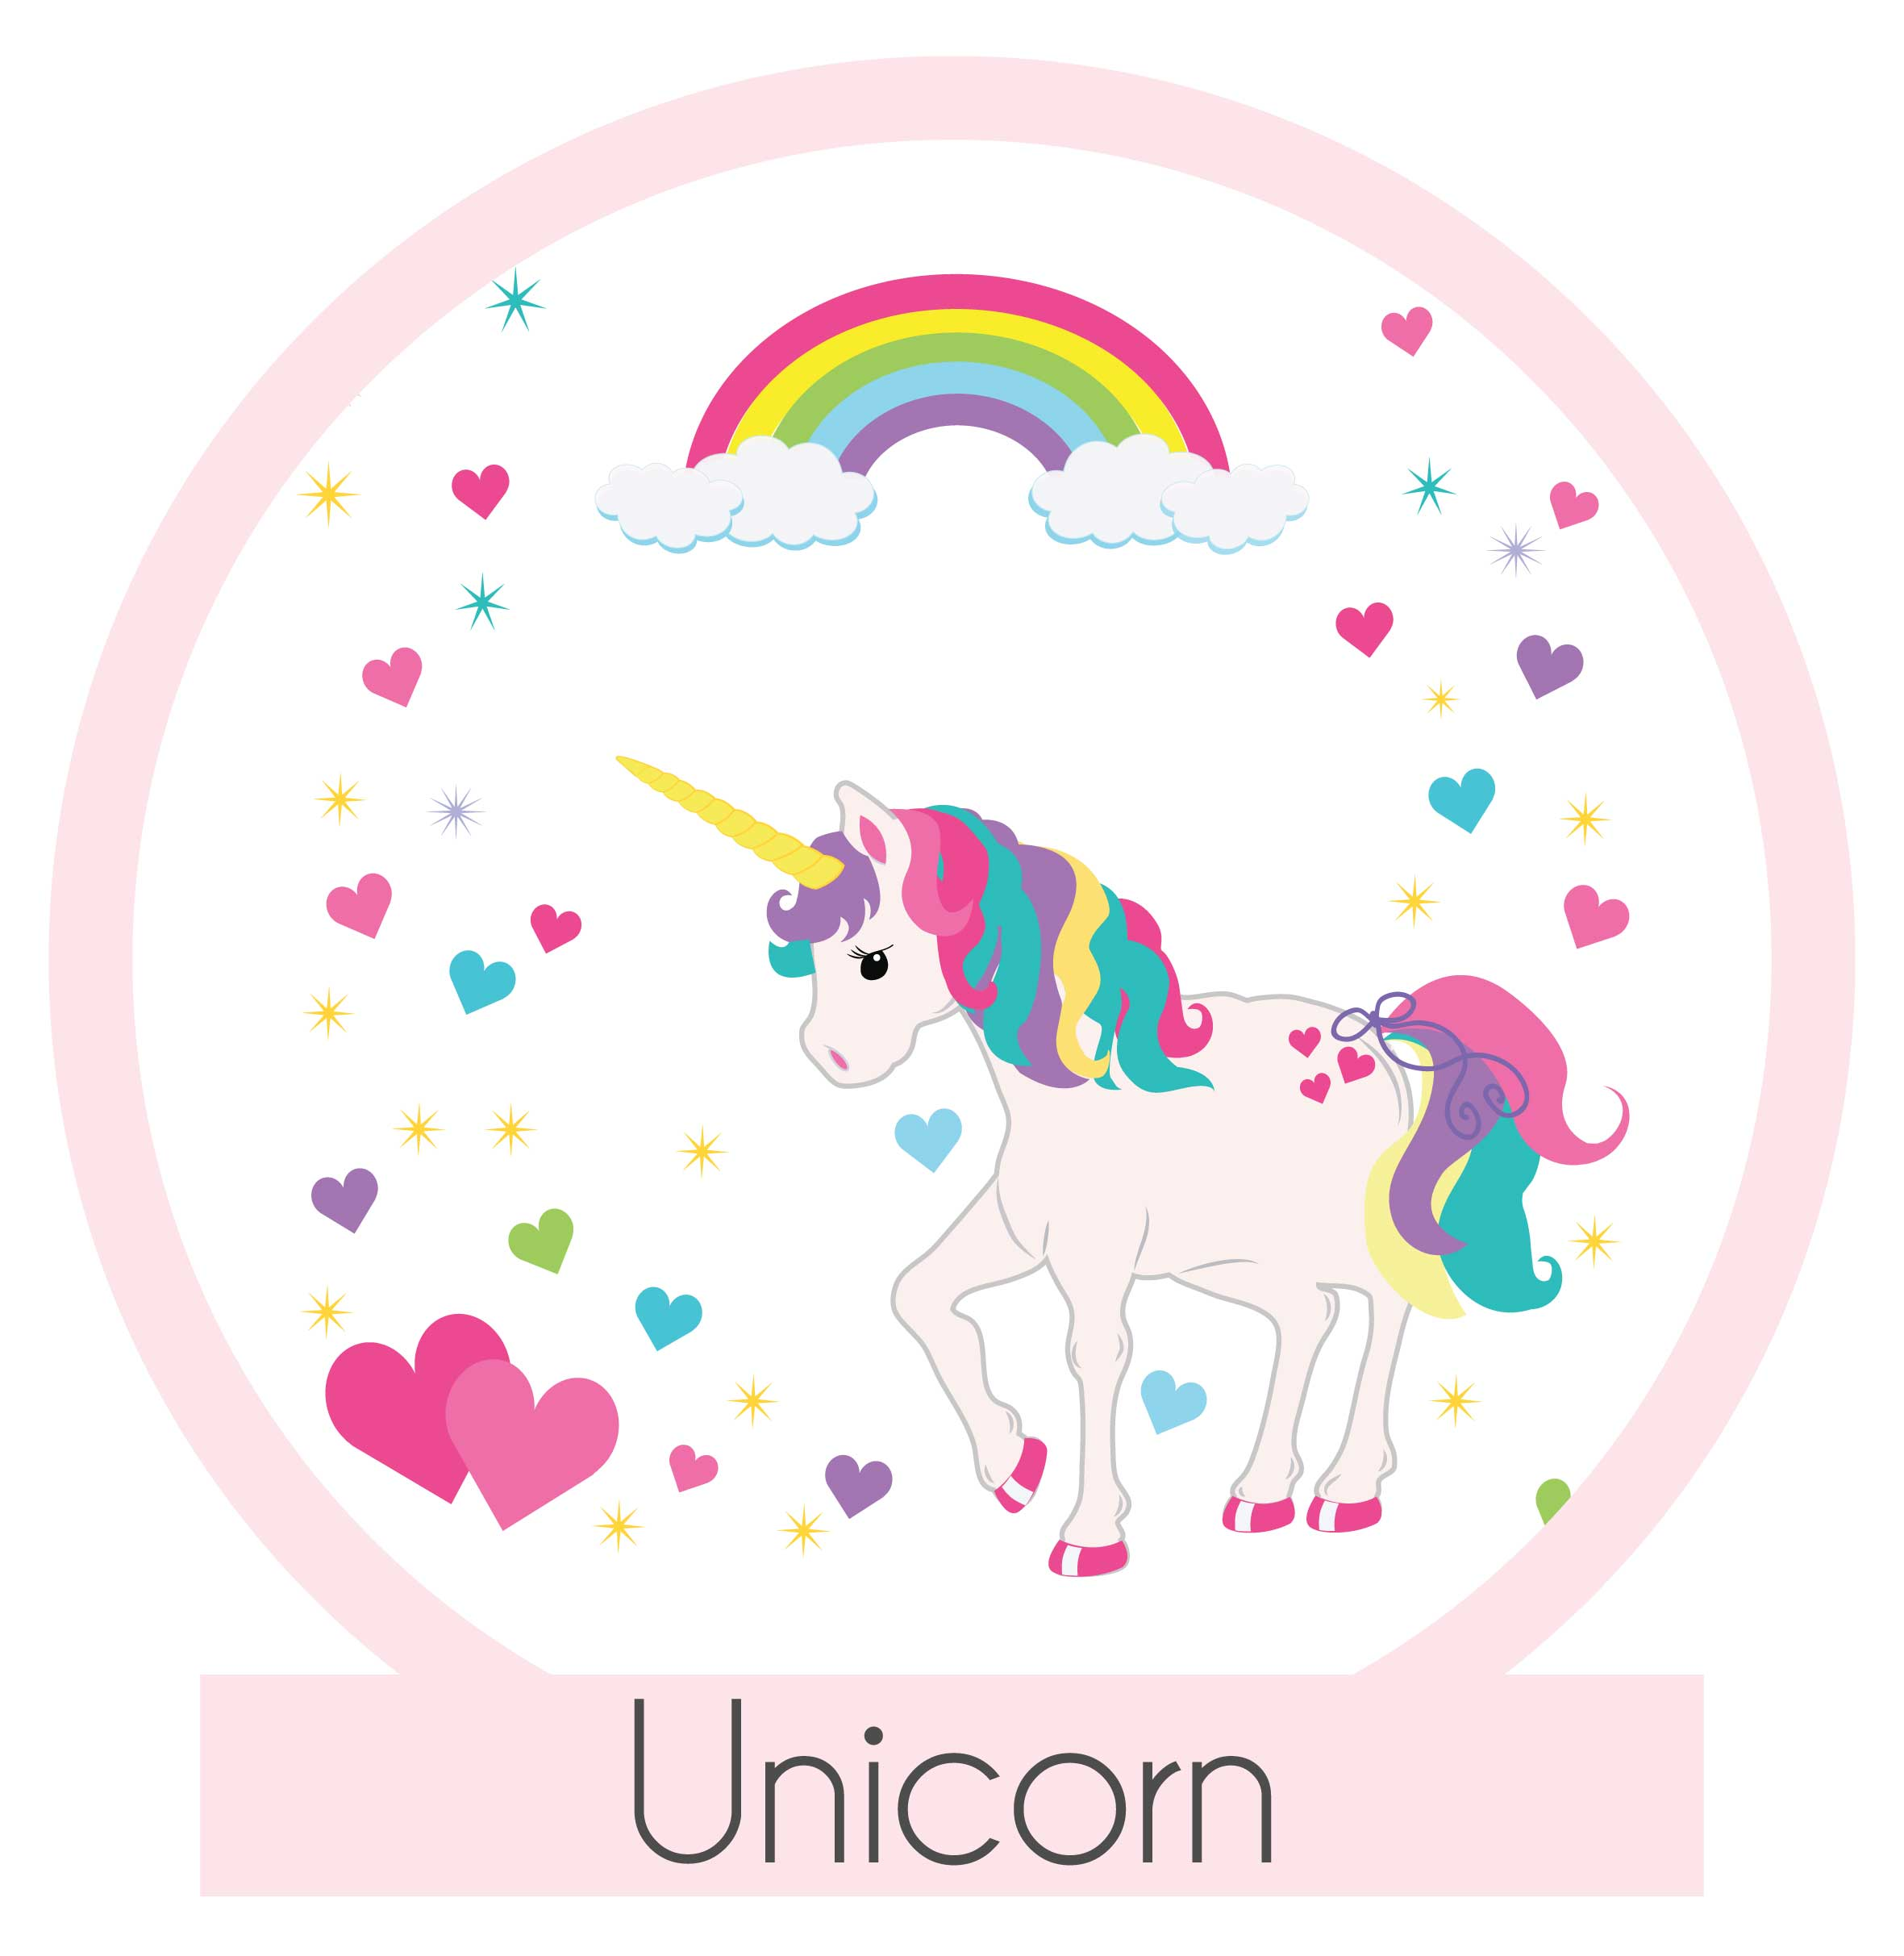 personalized unicorn gift